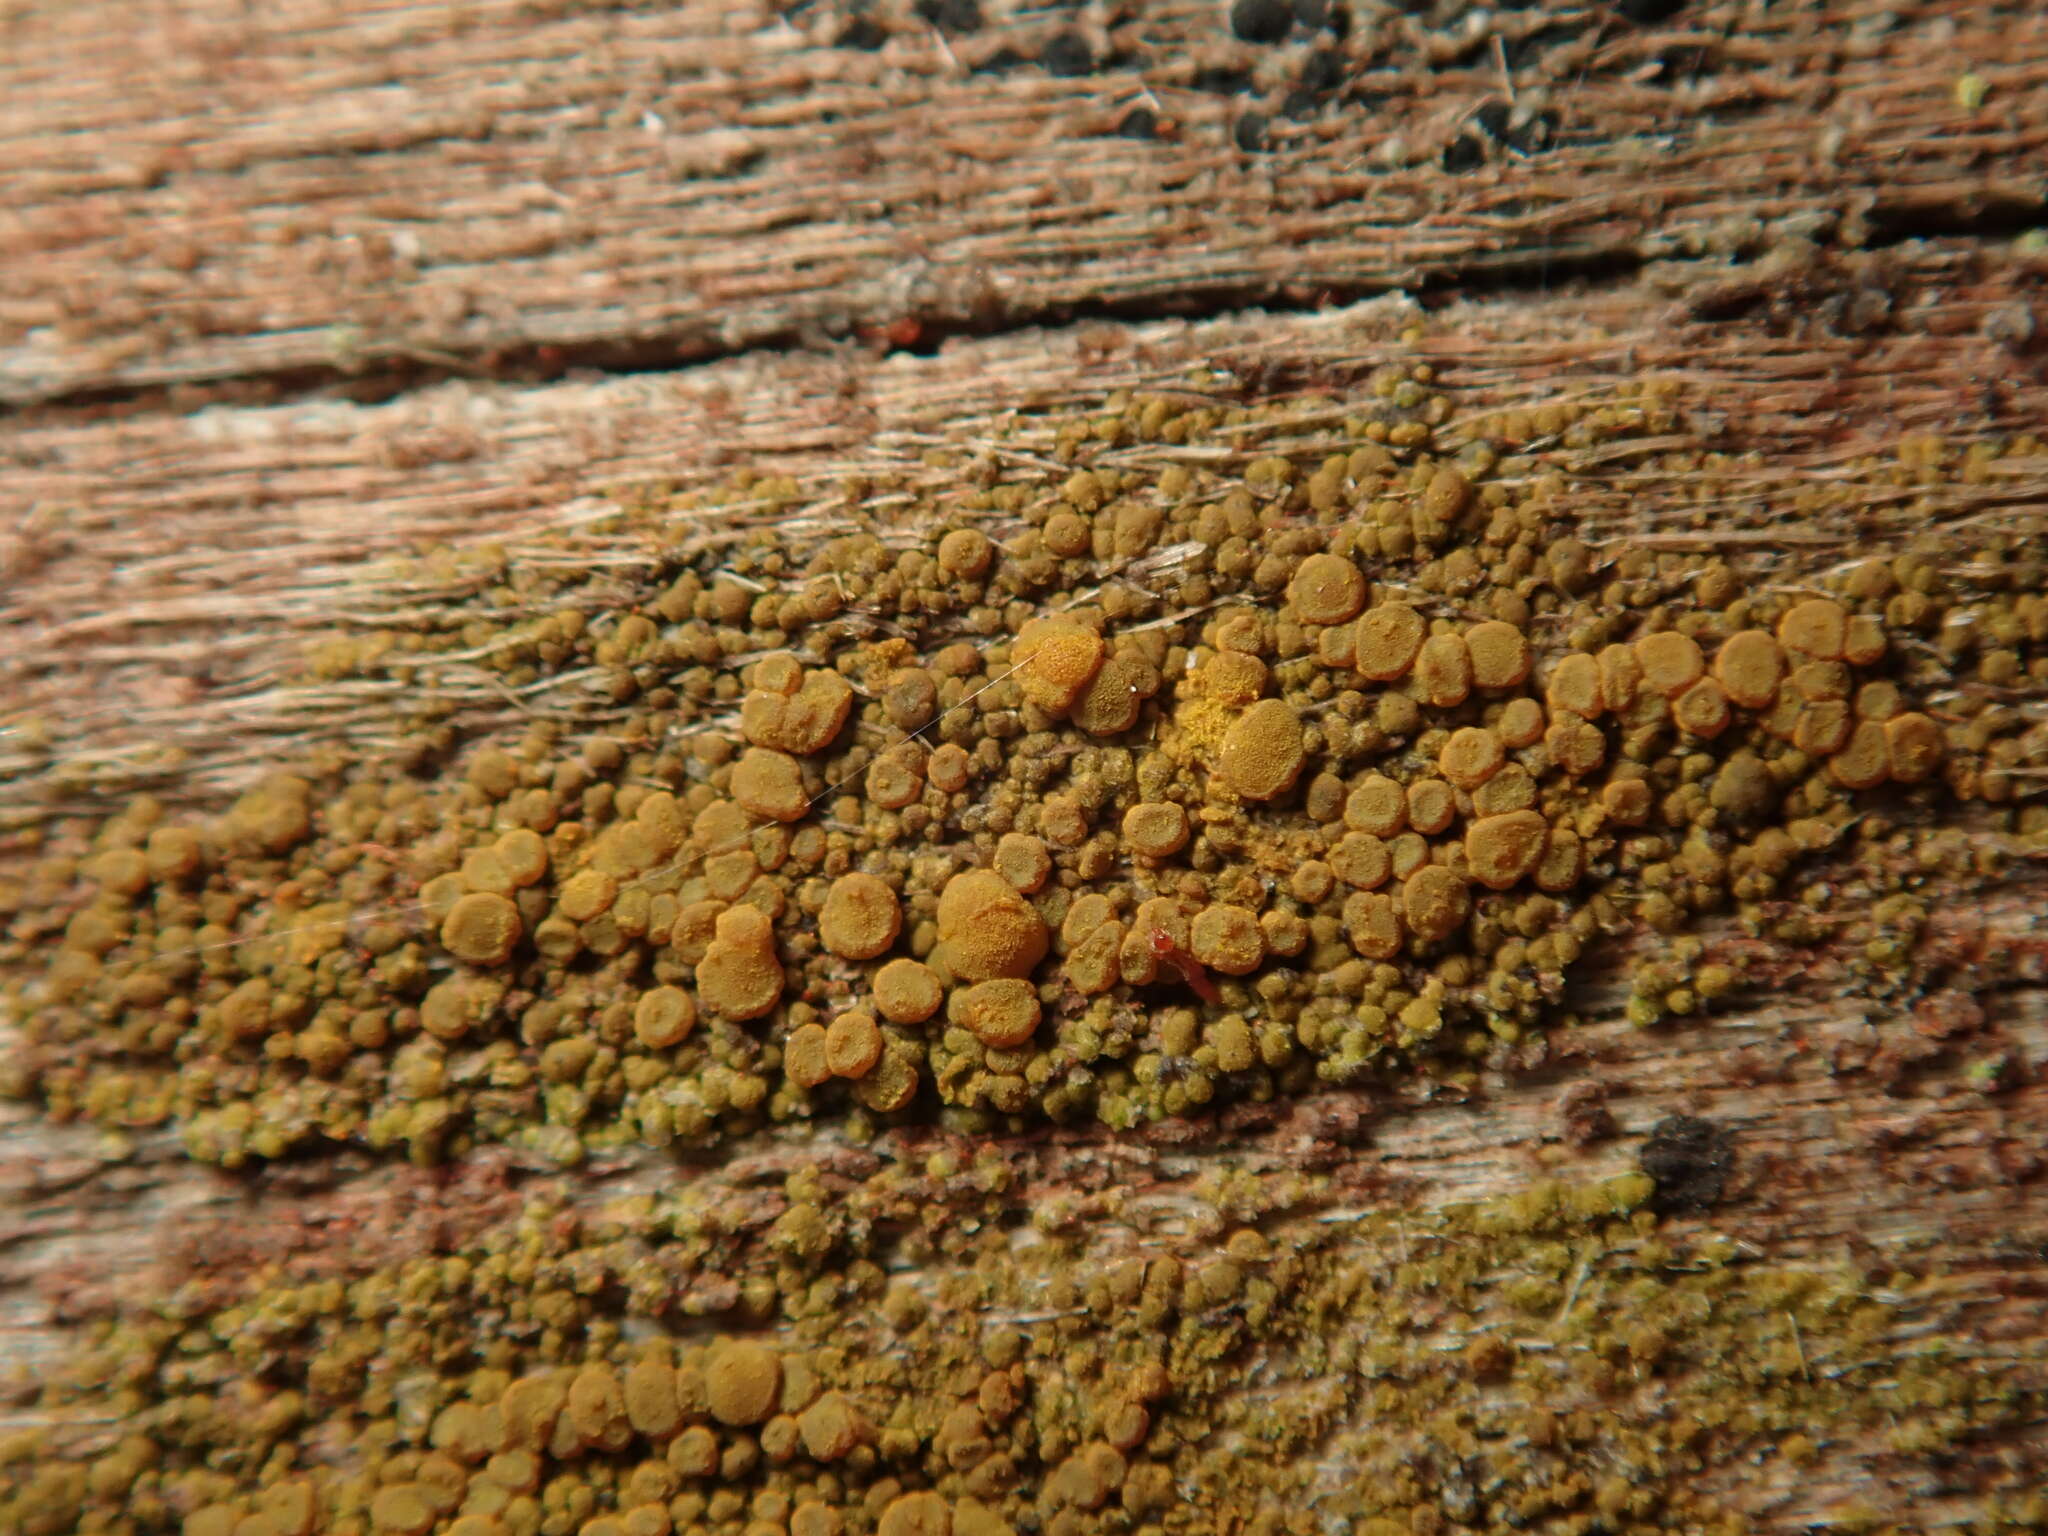 Image of eggyolk lichen